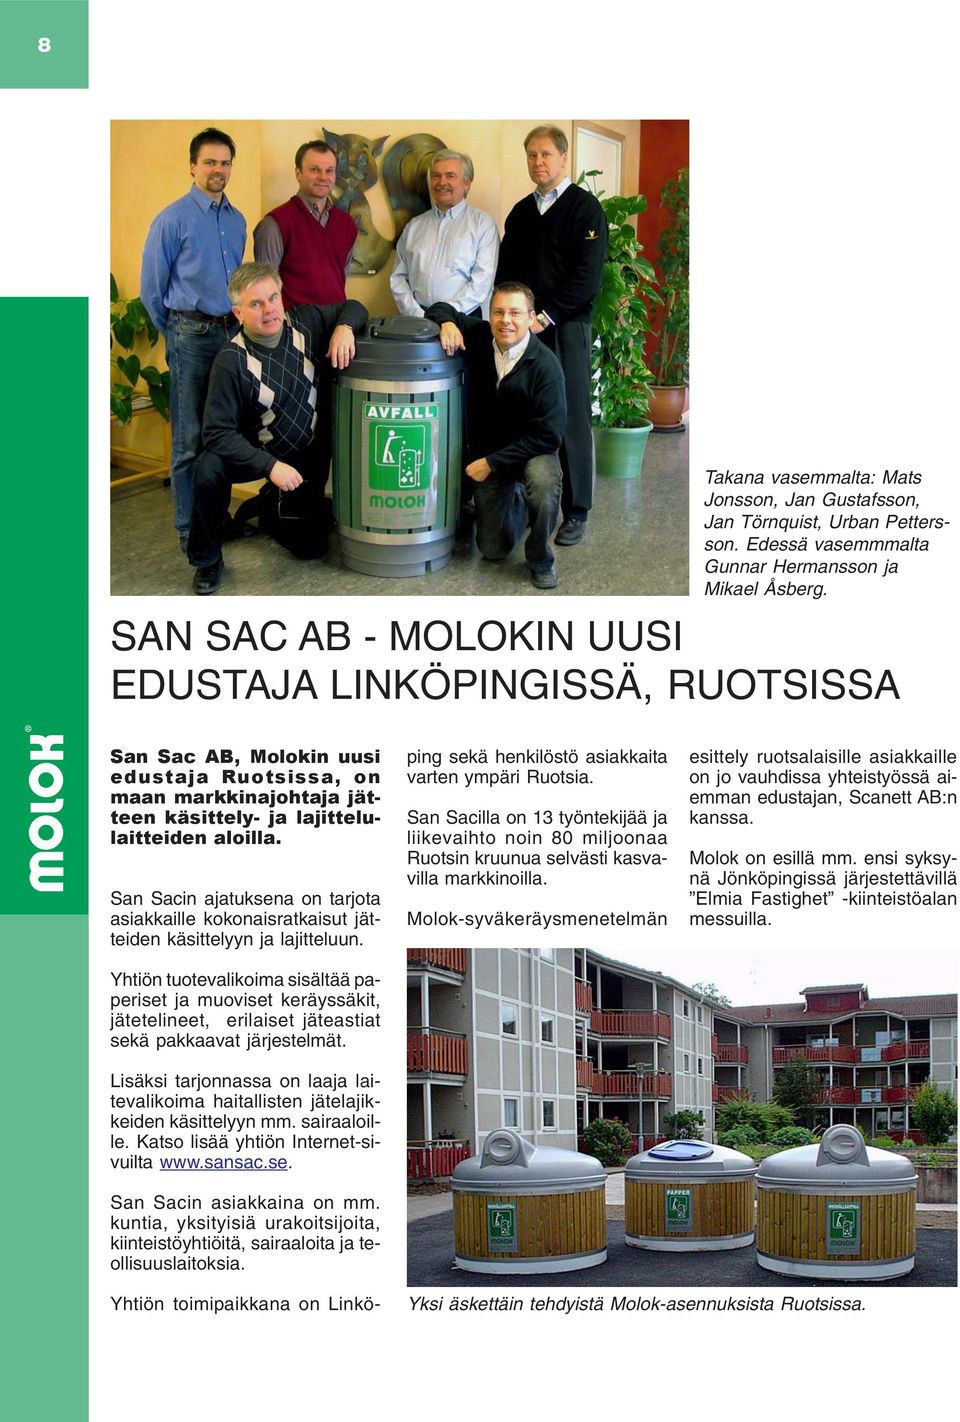 San Sacin ajatuksena on tarjota asiakkaille kokonaisratkaisut jätteiden käsittelyyn ja lajitteluun.